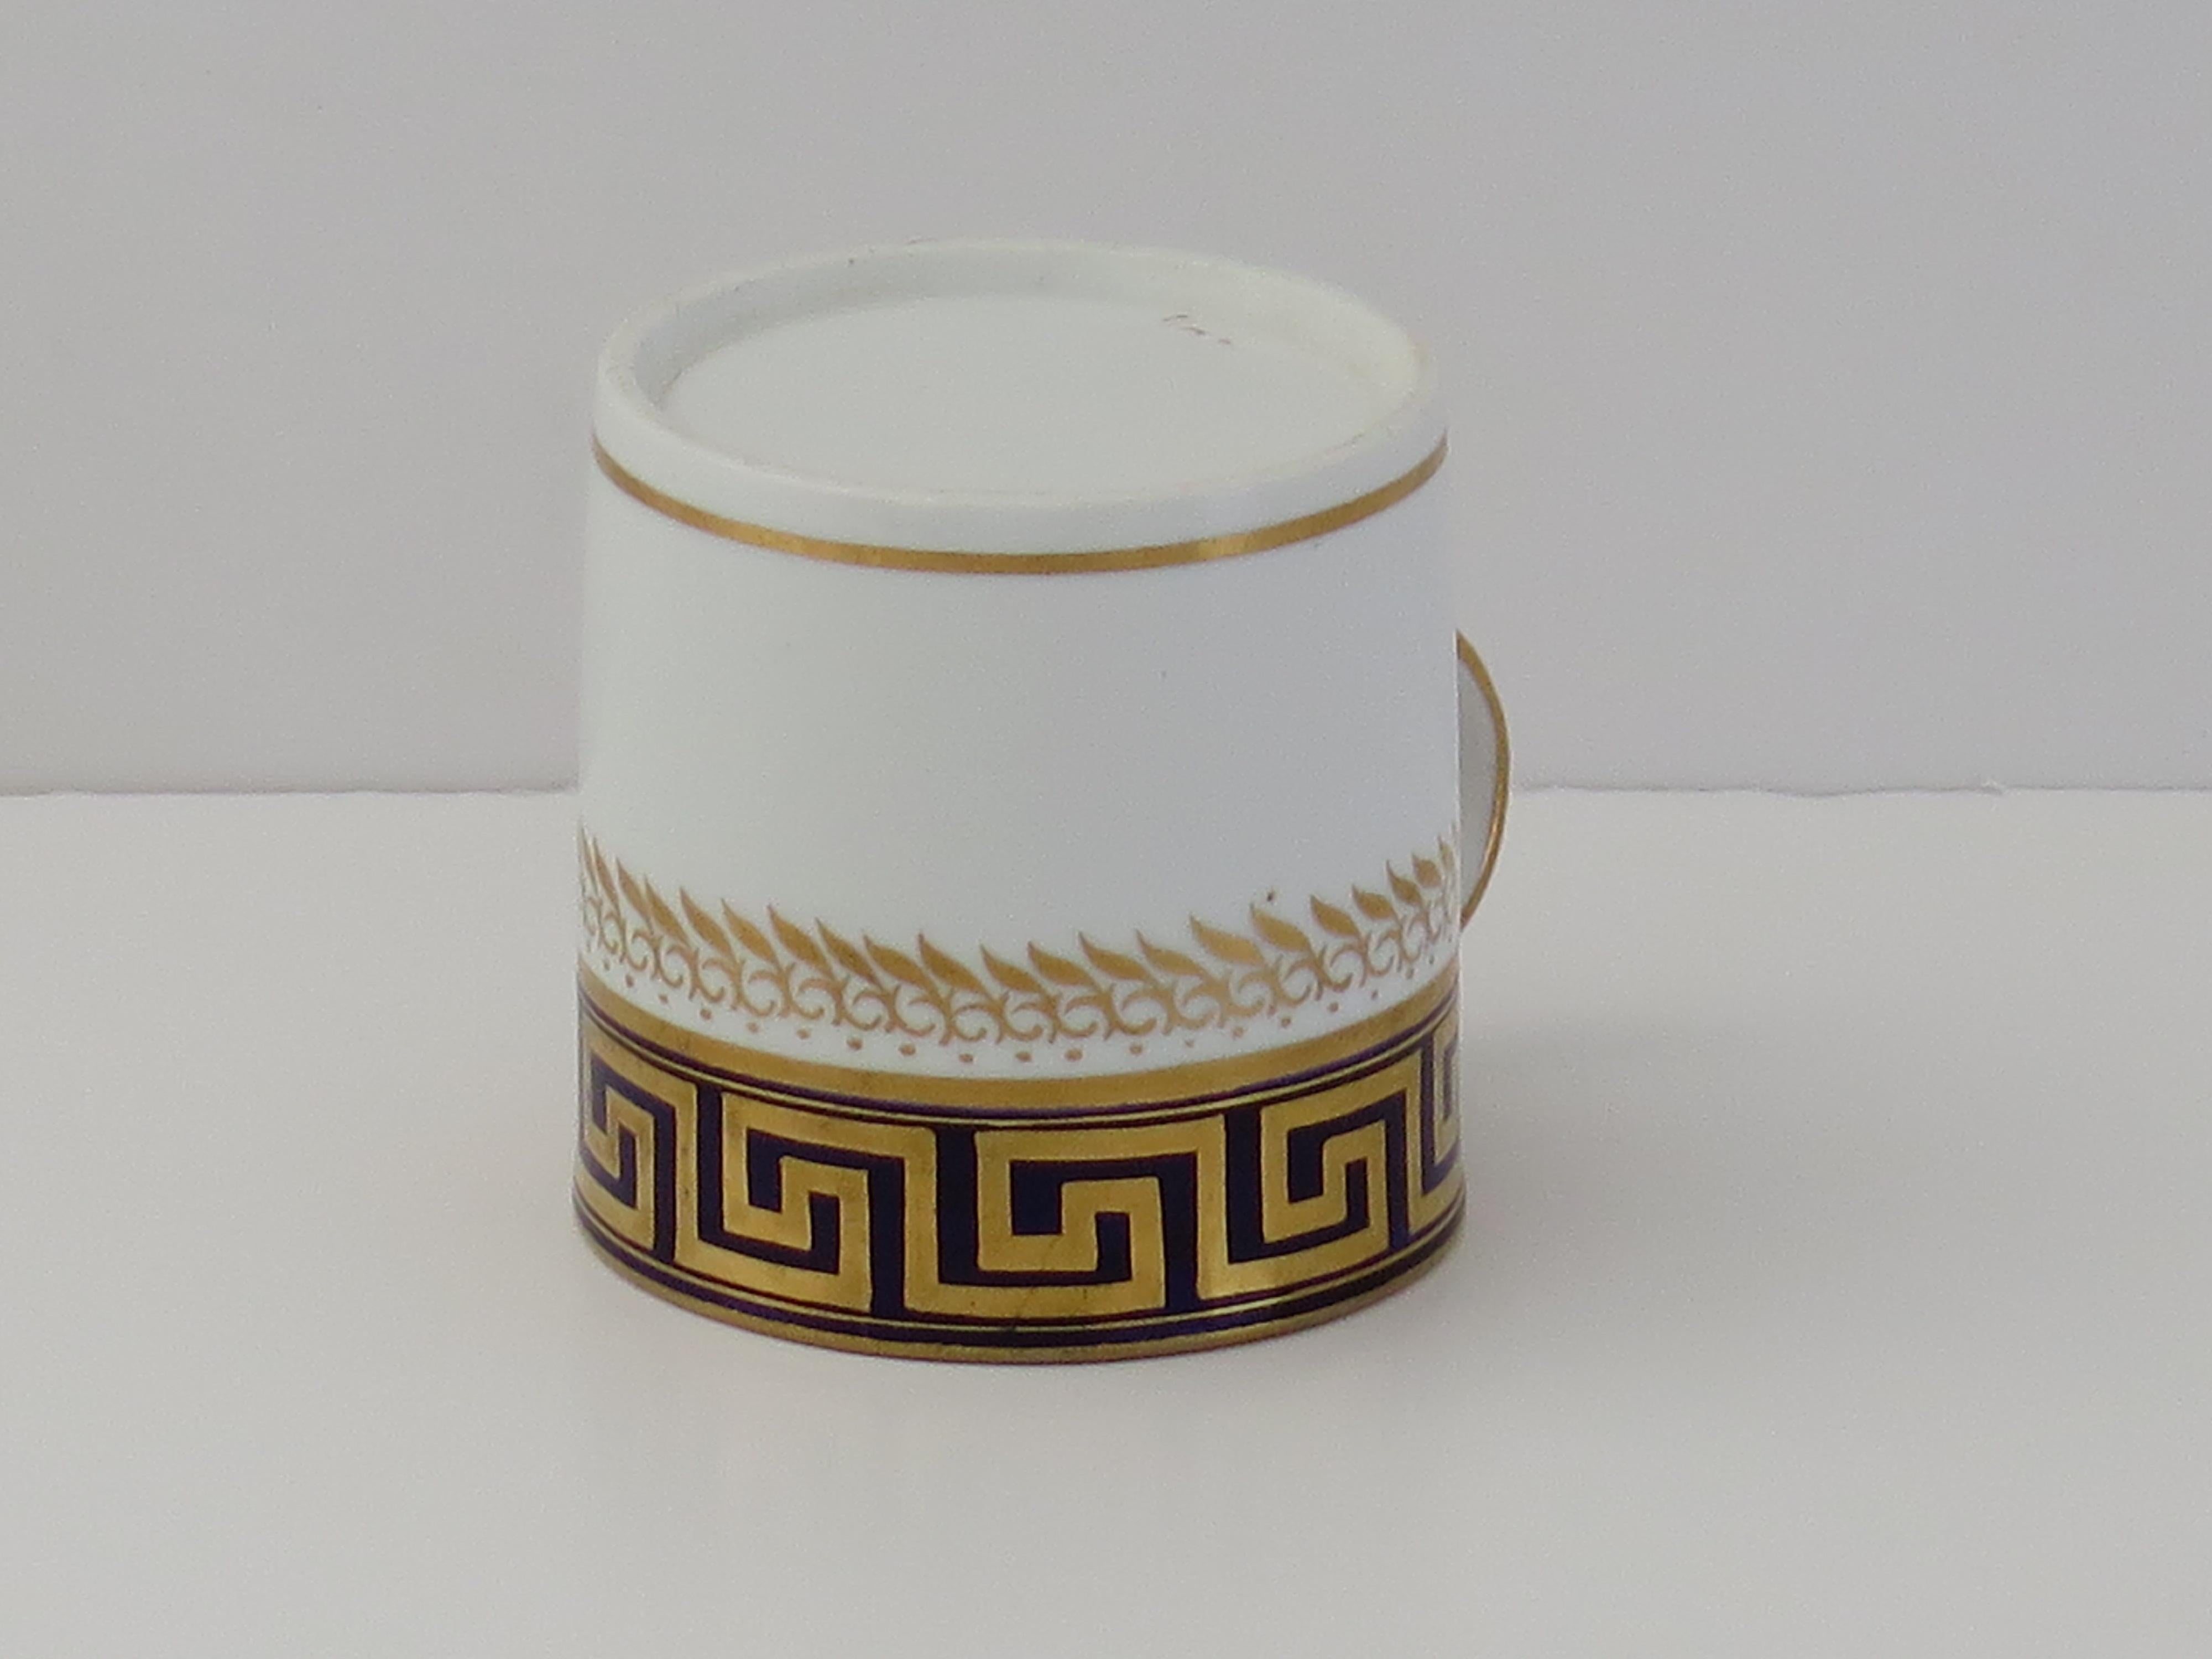 Il s'agit d'un très bon exemple de boîte à café en porcelaine anglaise d'époque George III, fabriquée par Spode au début du XIXe siècle, vers 1810.

Le Can a un côté droit et une anse en boucle Spode avec un coup de pied prononcé ou un coude à la